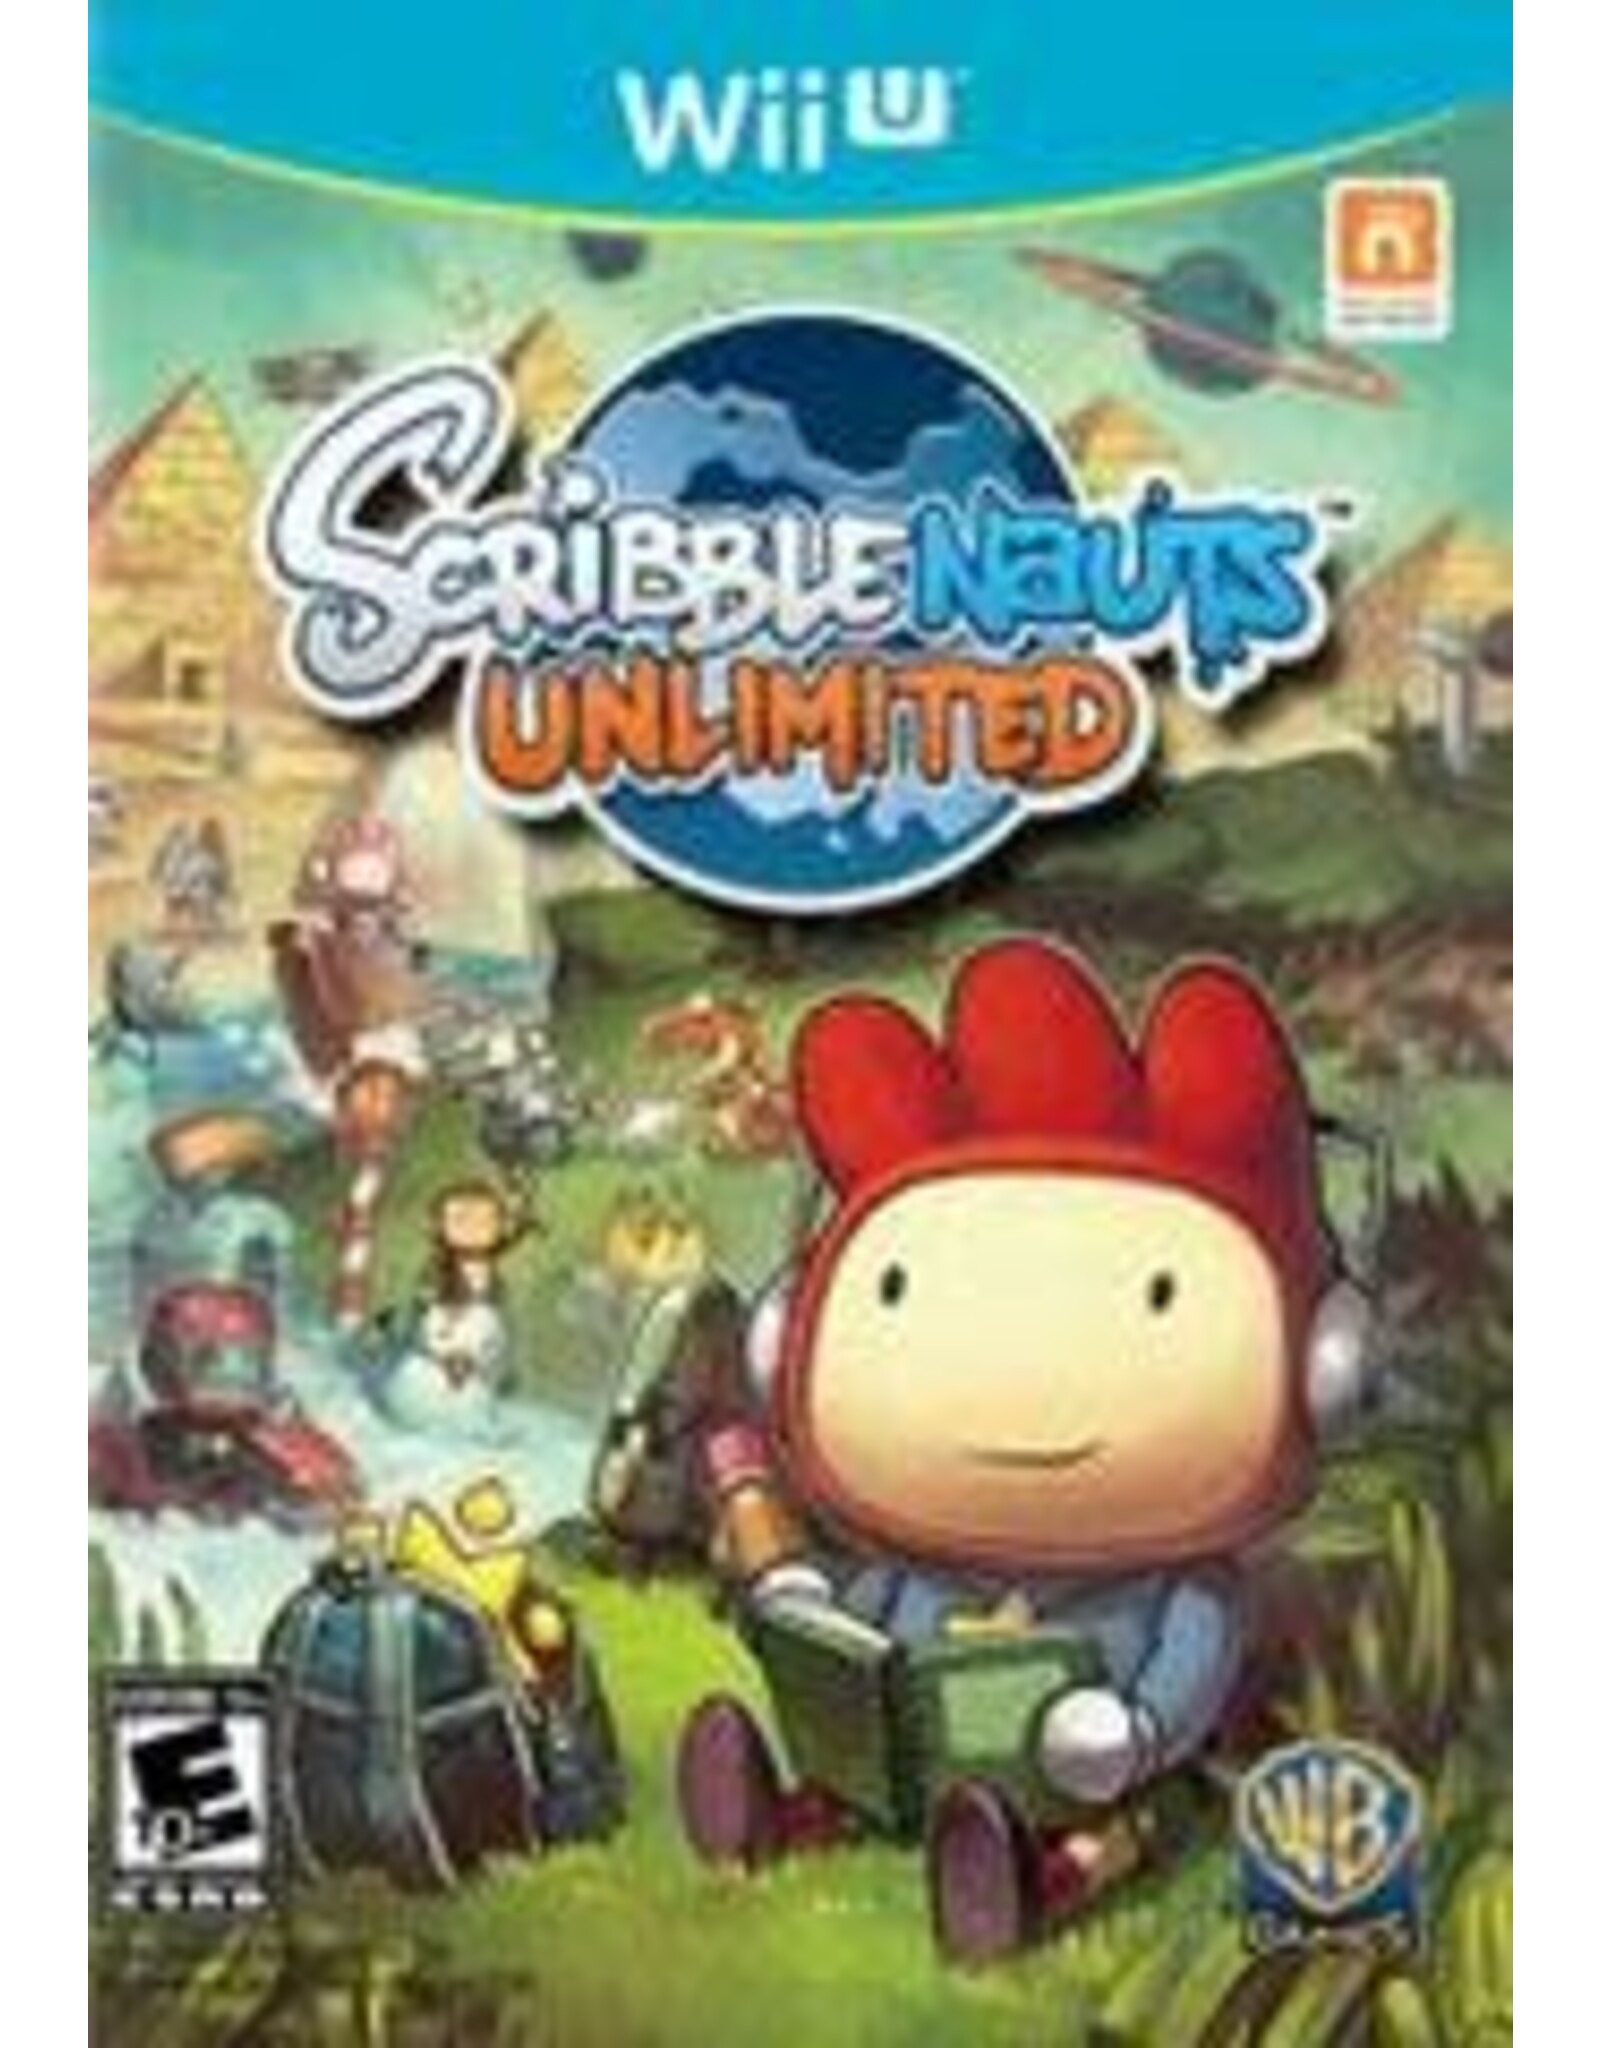 Wii U Scribblenauts Unlimited (Used)